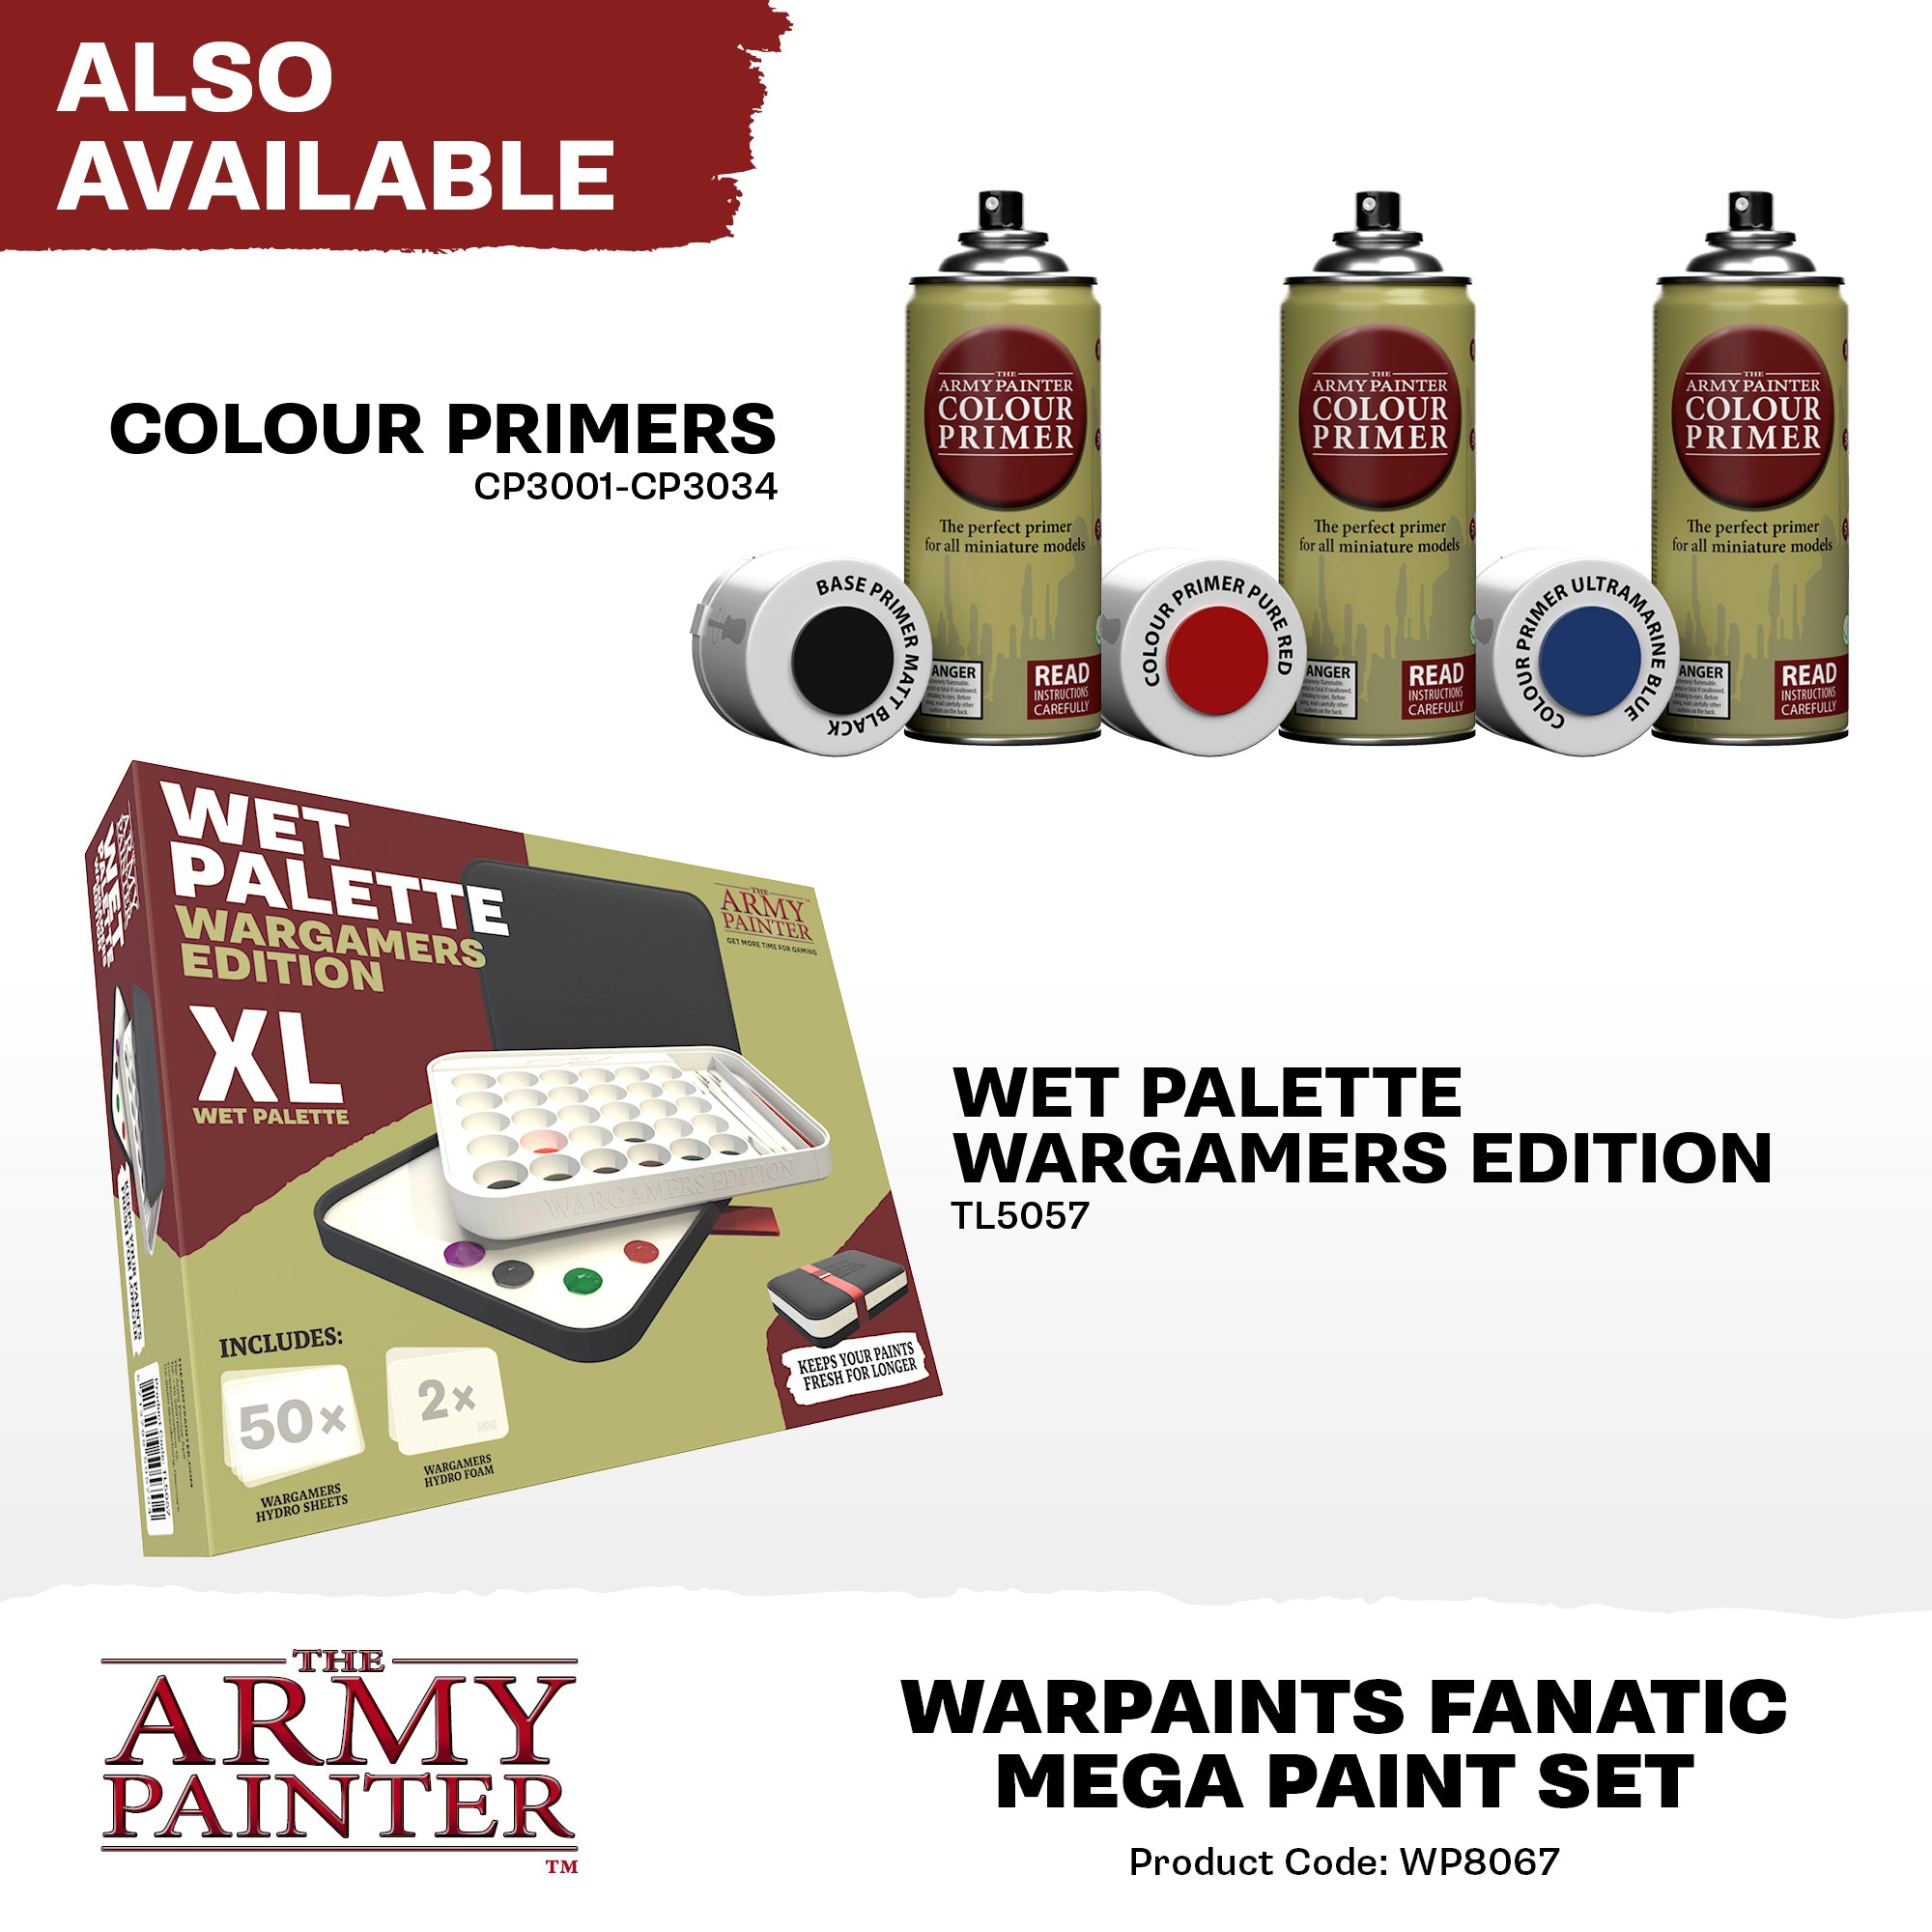 Army Painter Warpaints Fanatic Mega Paint Set